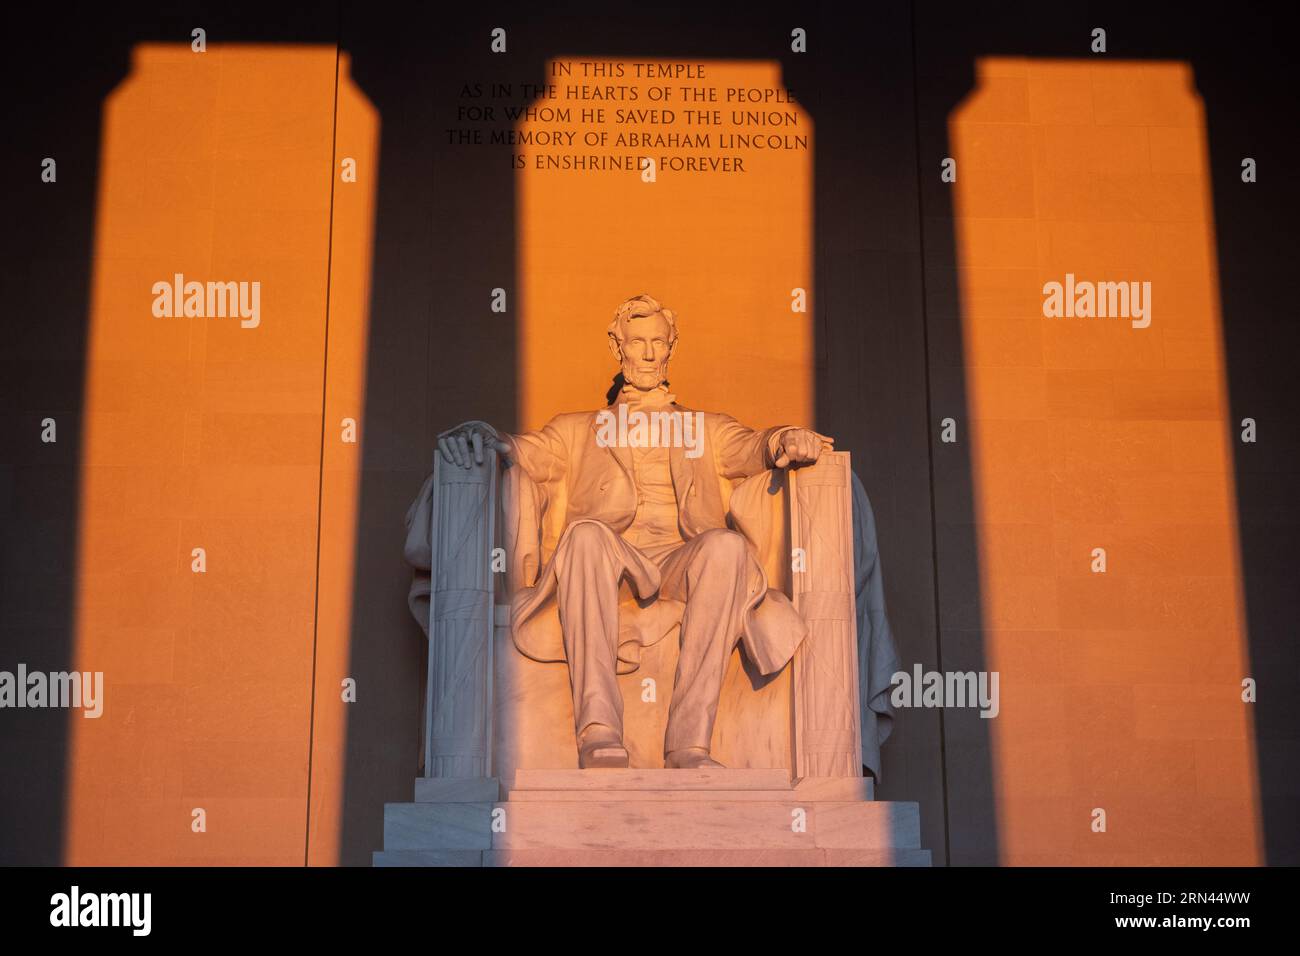 WASHINGTON DC, Vereinigte Staaten – das Lincoln Memorial, das Abraham Lincoln, dem 16. Präsidenten der Vereinigten Staaten, gewidmet ist, gilt als Wahrzeichen der National Mall. Es symbolisiert das Engagement der Nation für Einheit und Gleichheit, wobei Lincolns Figur den Vorsitz über den Reflecting Pool führt und Inschriften seiner berühmten Reden in seine Wände eingeätzt sind. Stockfoto